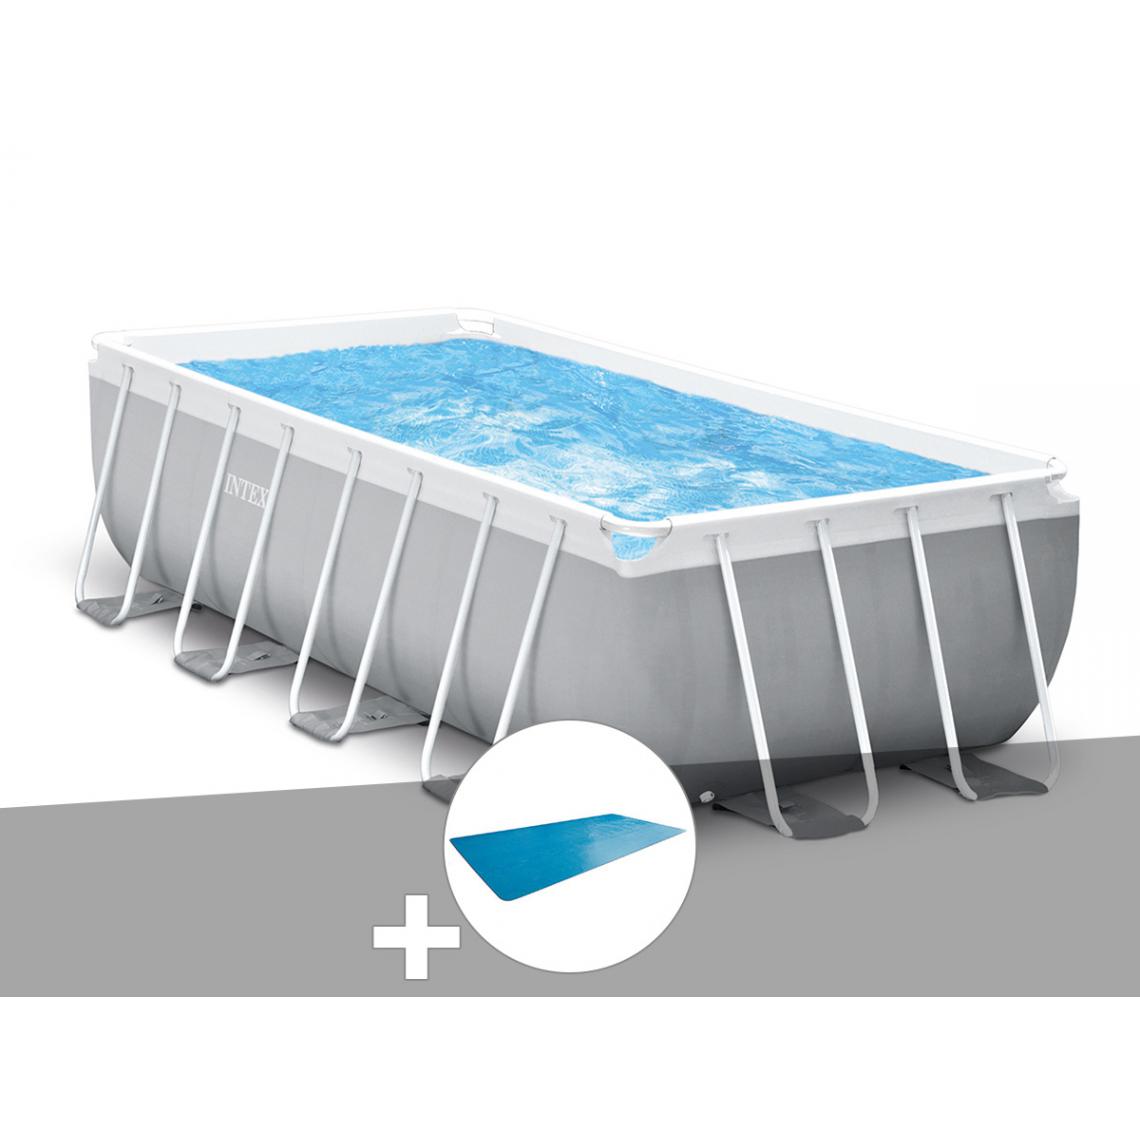 Intex - Kit piscine tubulaire Intex Prism Frame rectangulaire 4,00 x 2,00 x 1,22 m + Bâche à bulles - Piscine Tubulaire